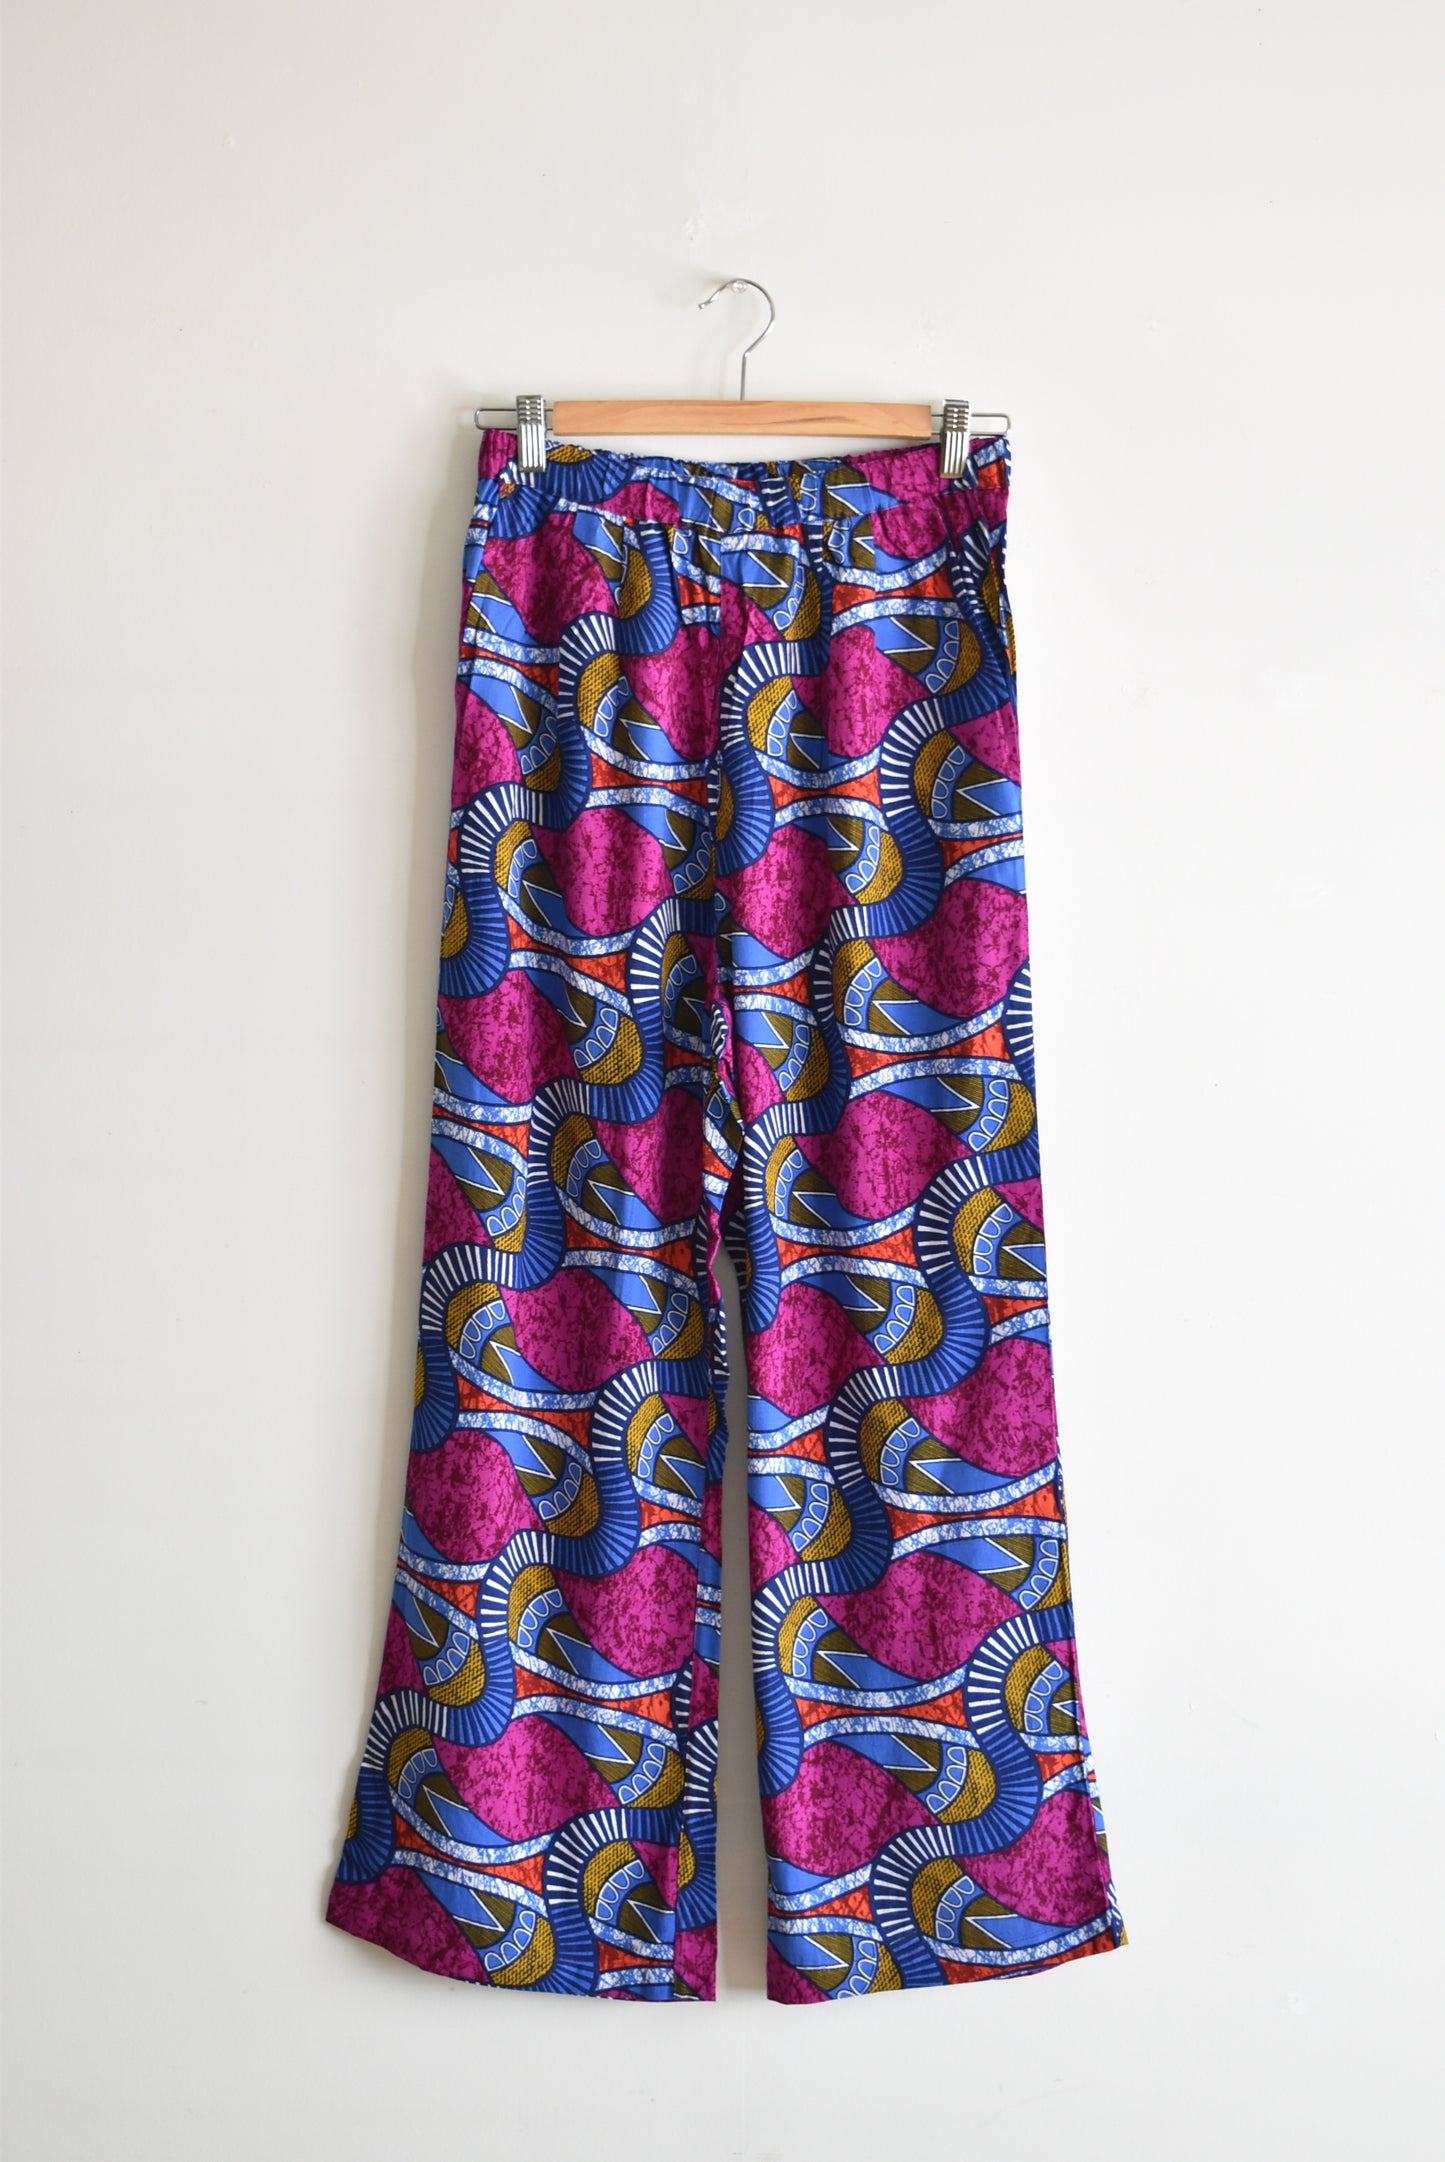 「noia」rayon print easy pants -batik pink- (women)